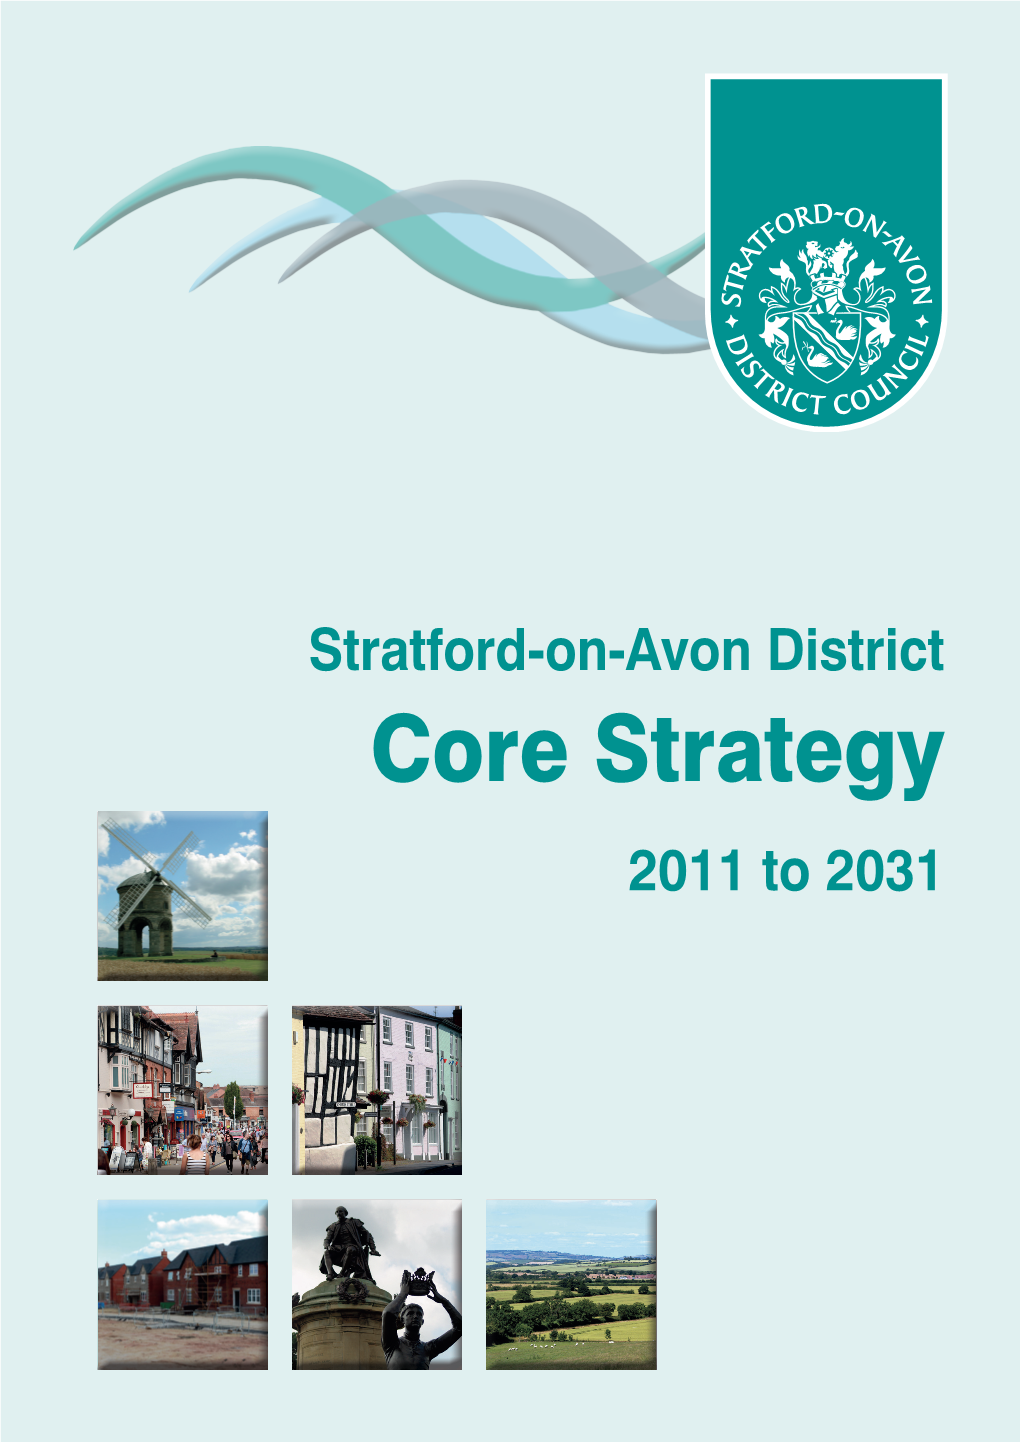 SDC Core Strategy 2011-2031